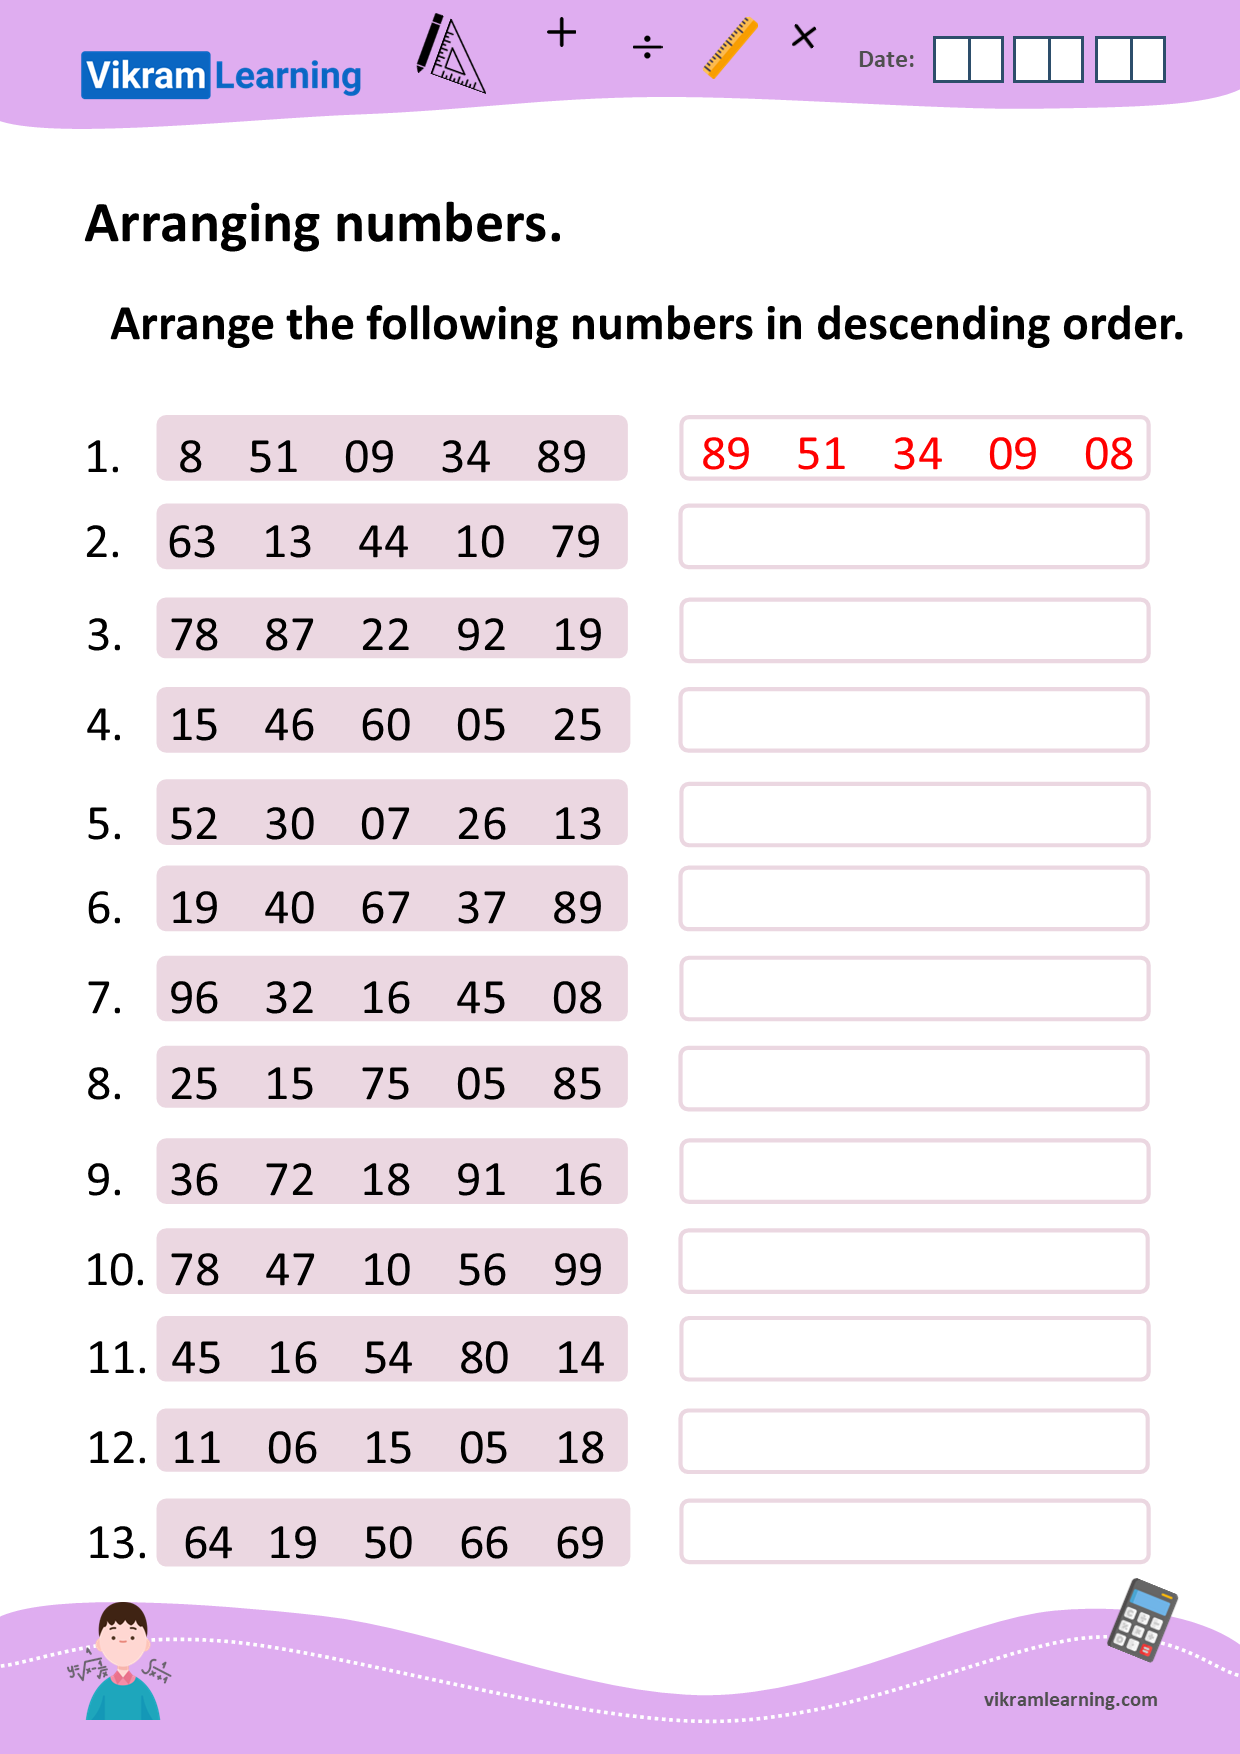 download-arranging-numbers-in-ascending-order-and-descending-order